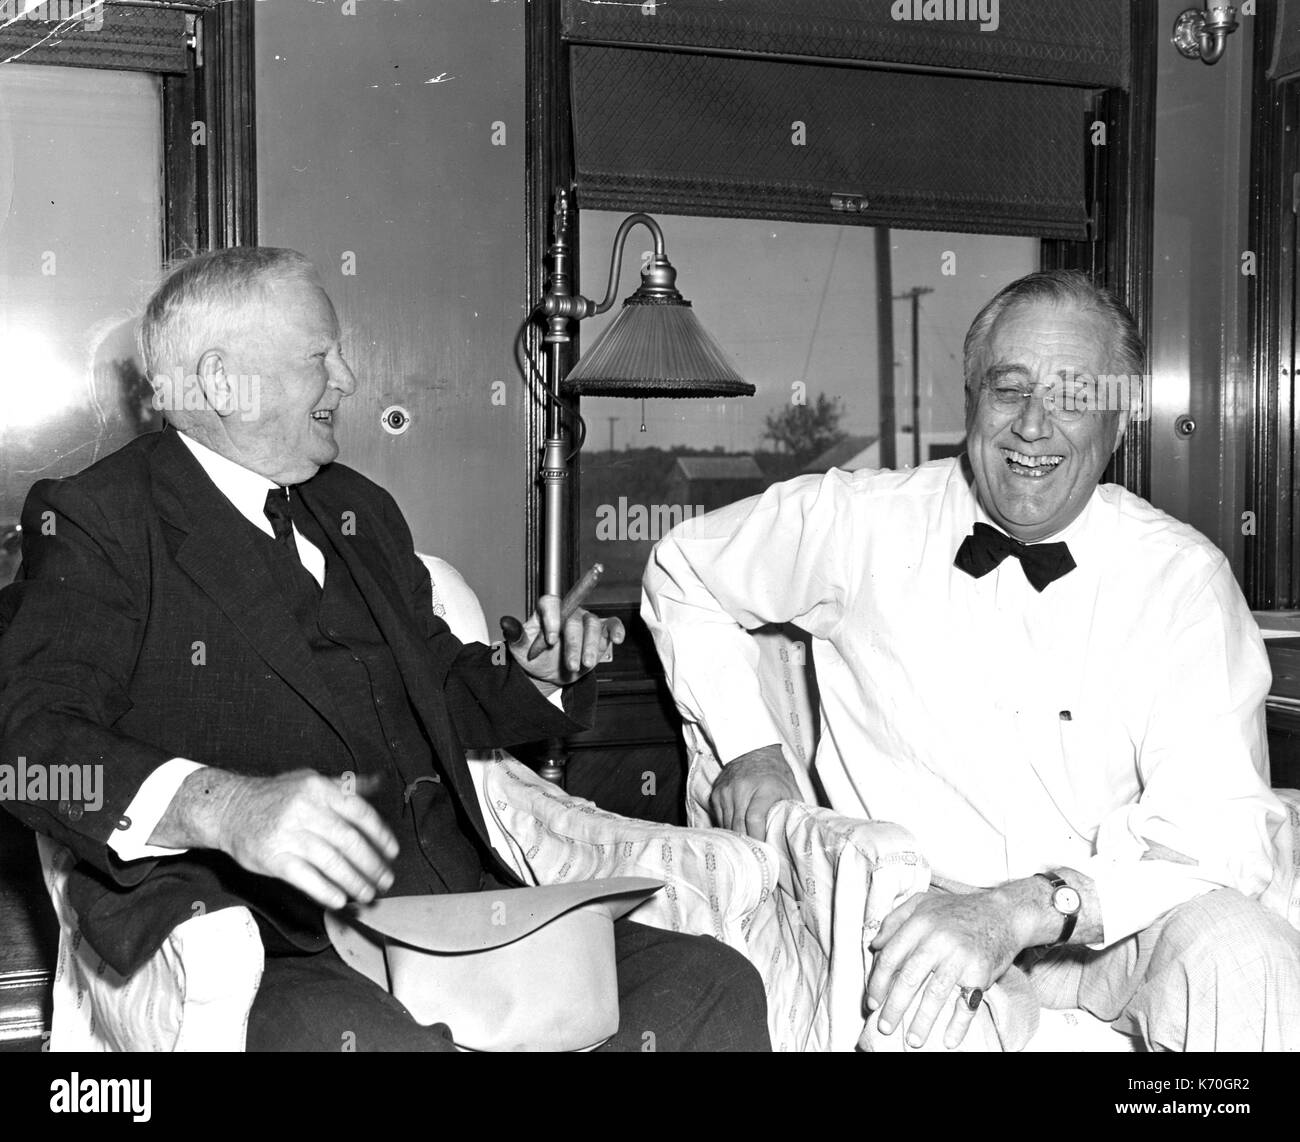 Uvalde, Texas - l'ancien Vice-président John Nance Garner s'amuse le président Franklin D. Roosevelt. Uvalde, Texas, vers 1942. Banque D'Images